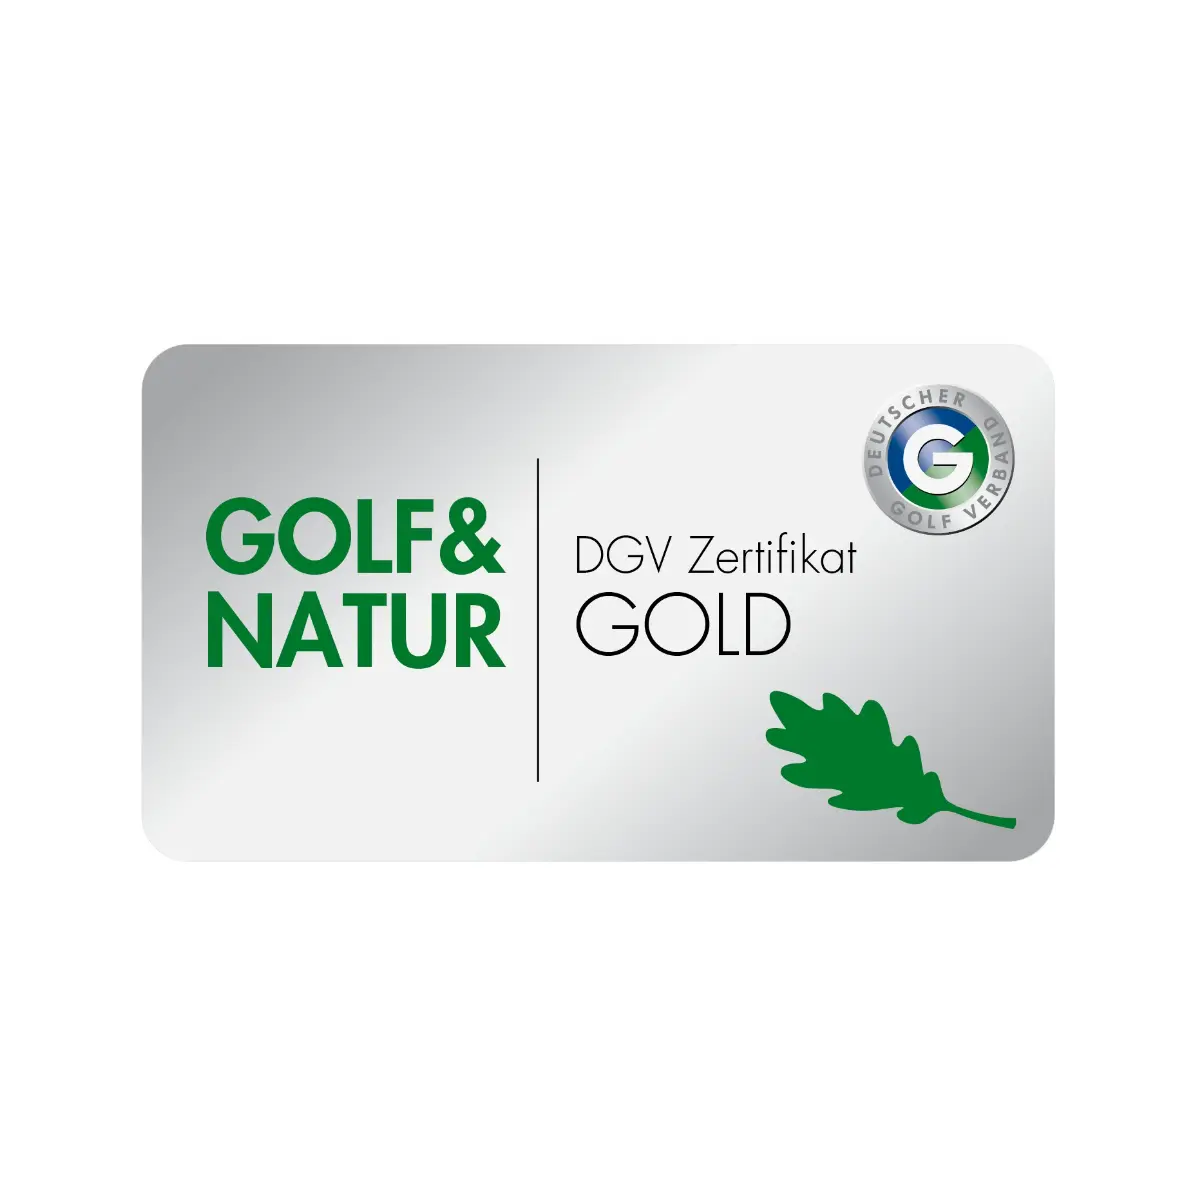 DGV Golf und Natur Zertifikat in Gold